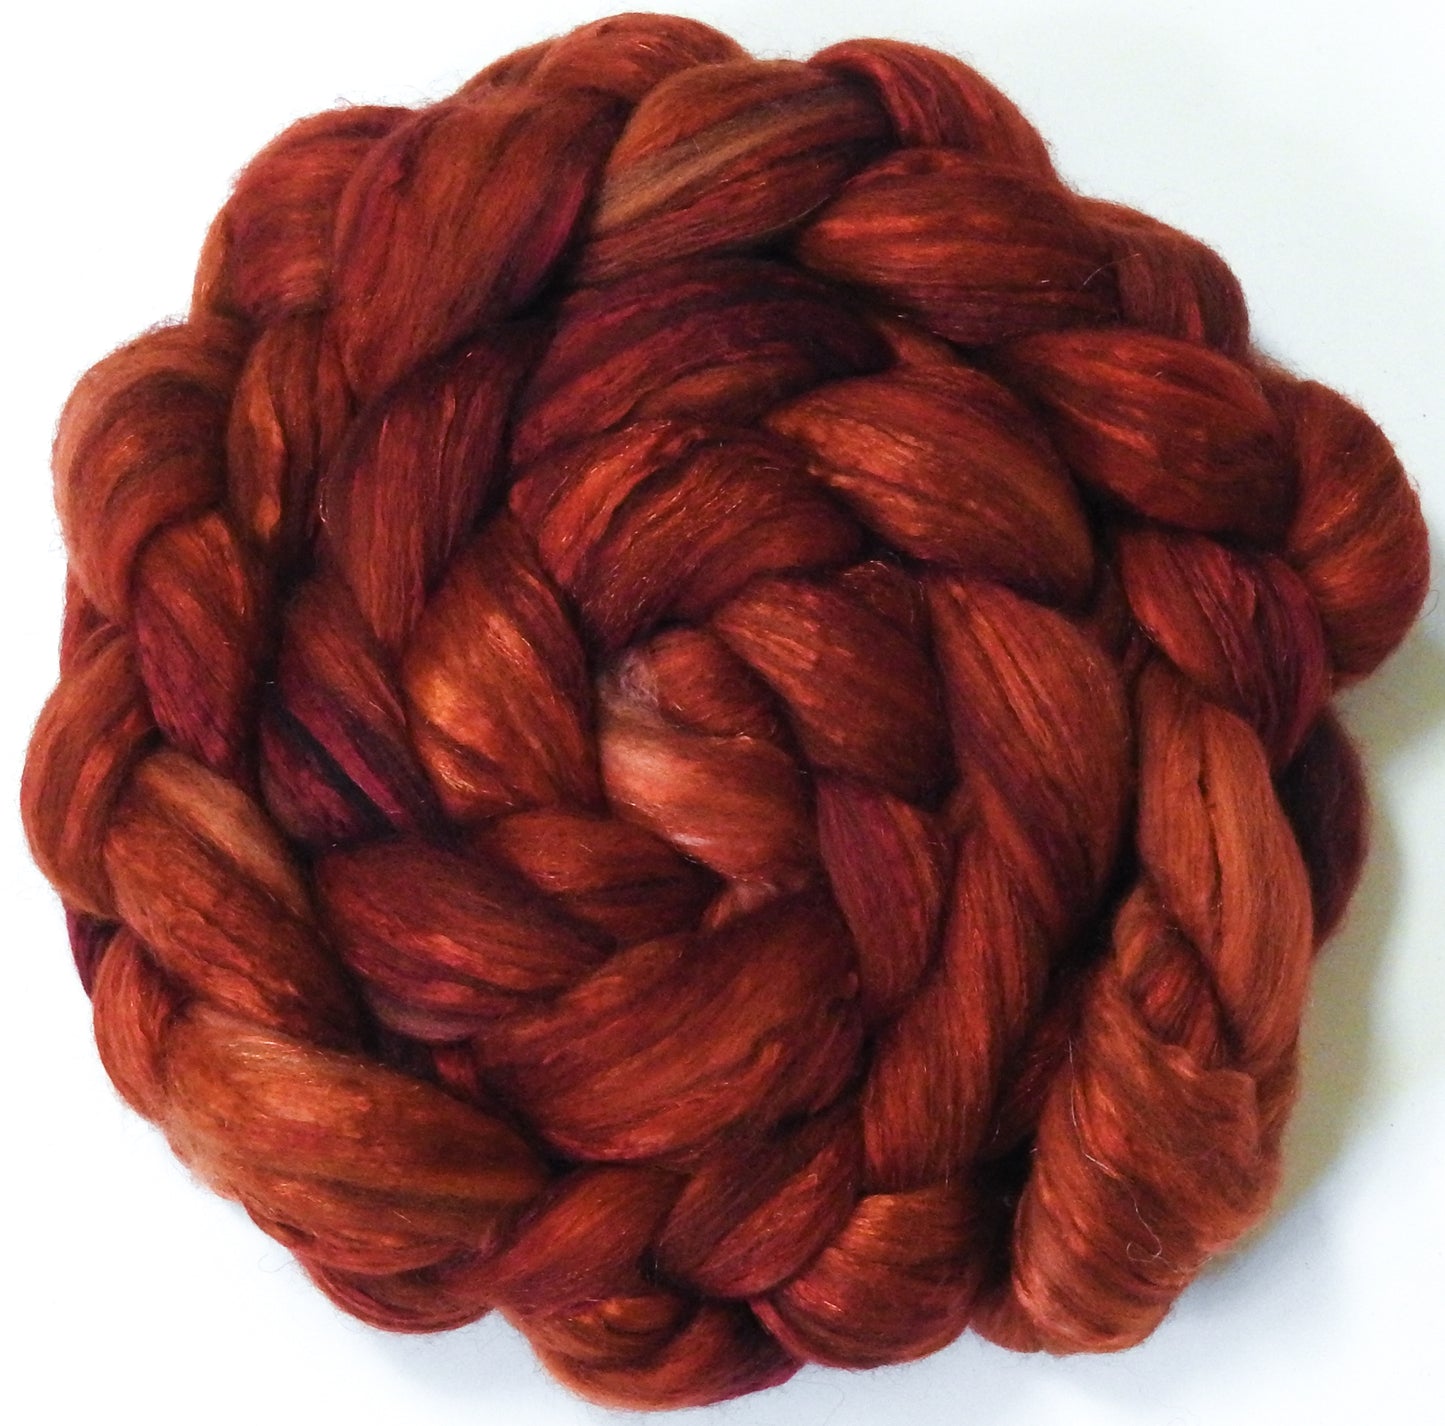 Carnelian (5.6 oz) -Glazed Solid - Batt in a Braid #7 - Polwarth/ Manx / Mulberry silk/ Firestar (30/30/30/10)